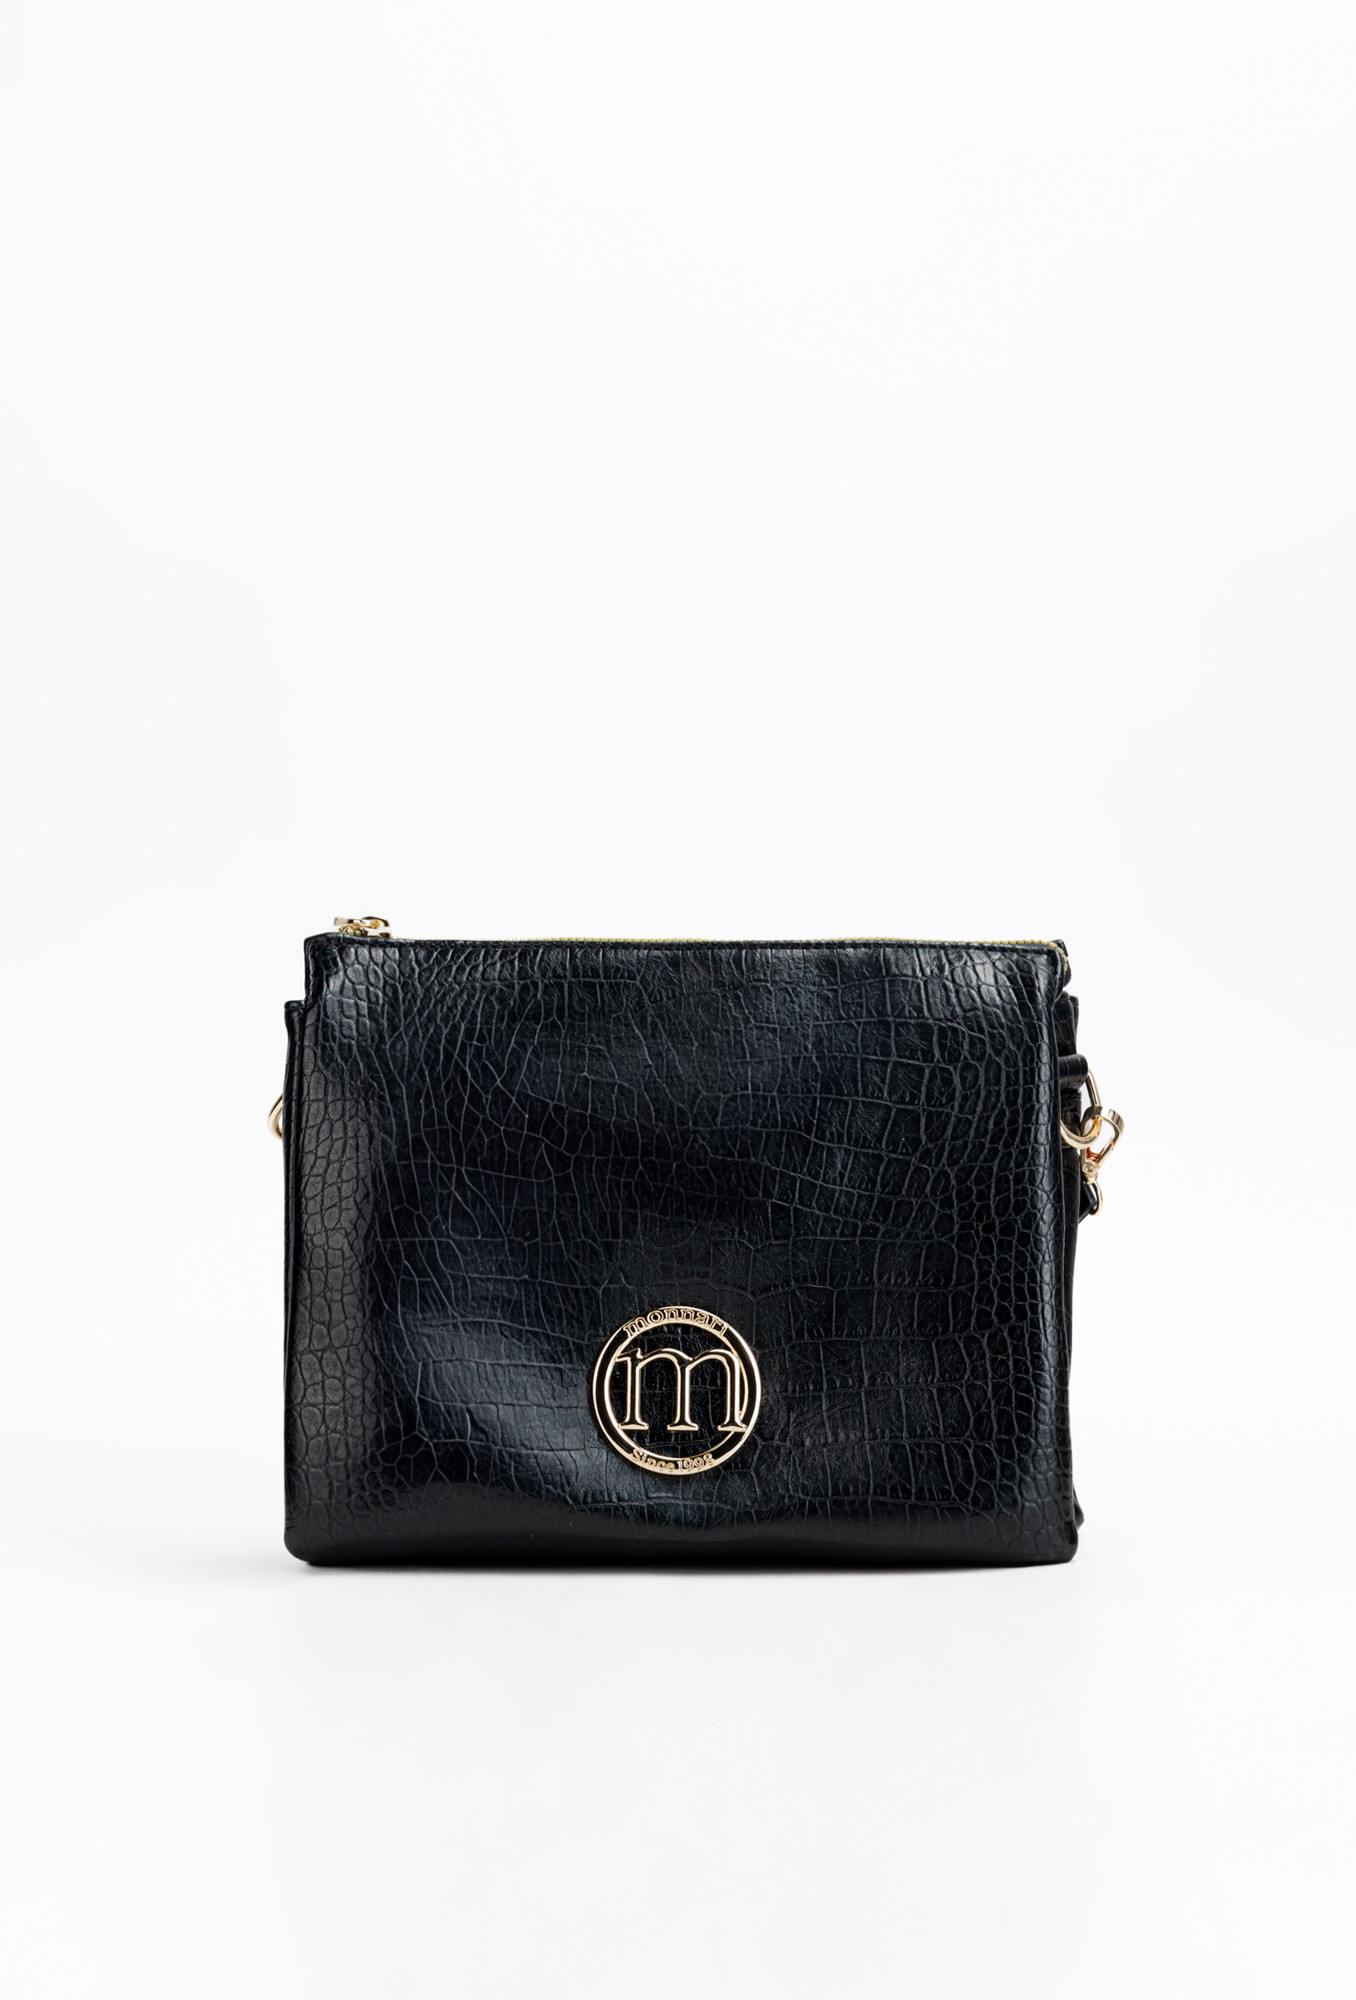 Monnari Bags Dámská kabelka s logem značky Monnari Multi Black OS